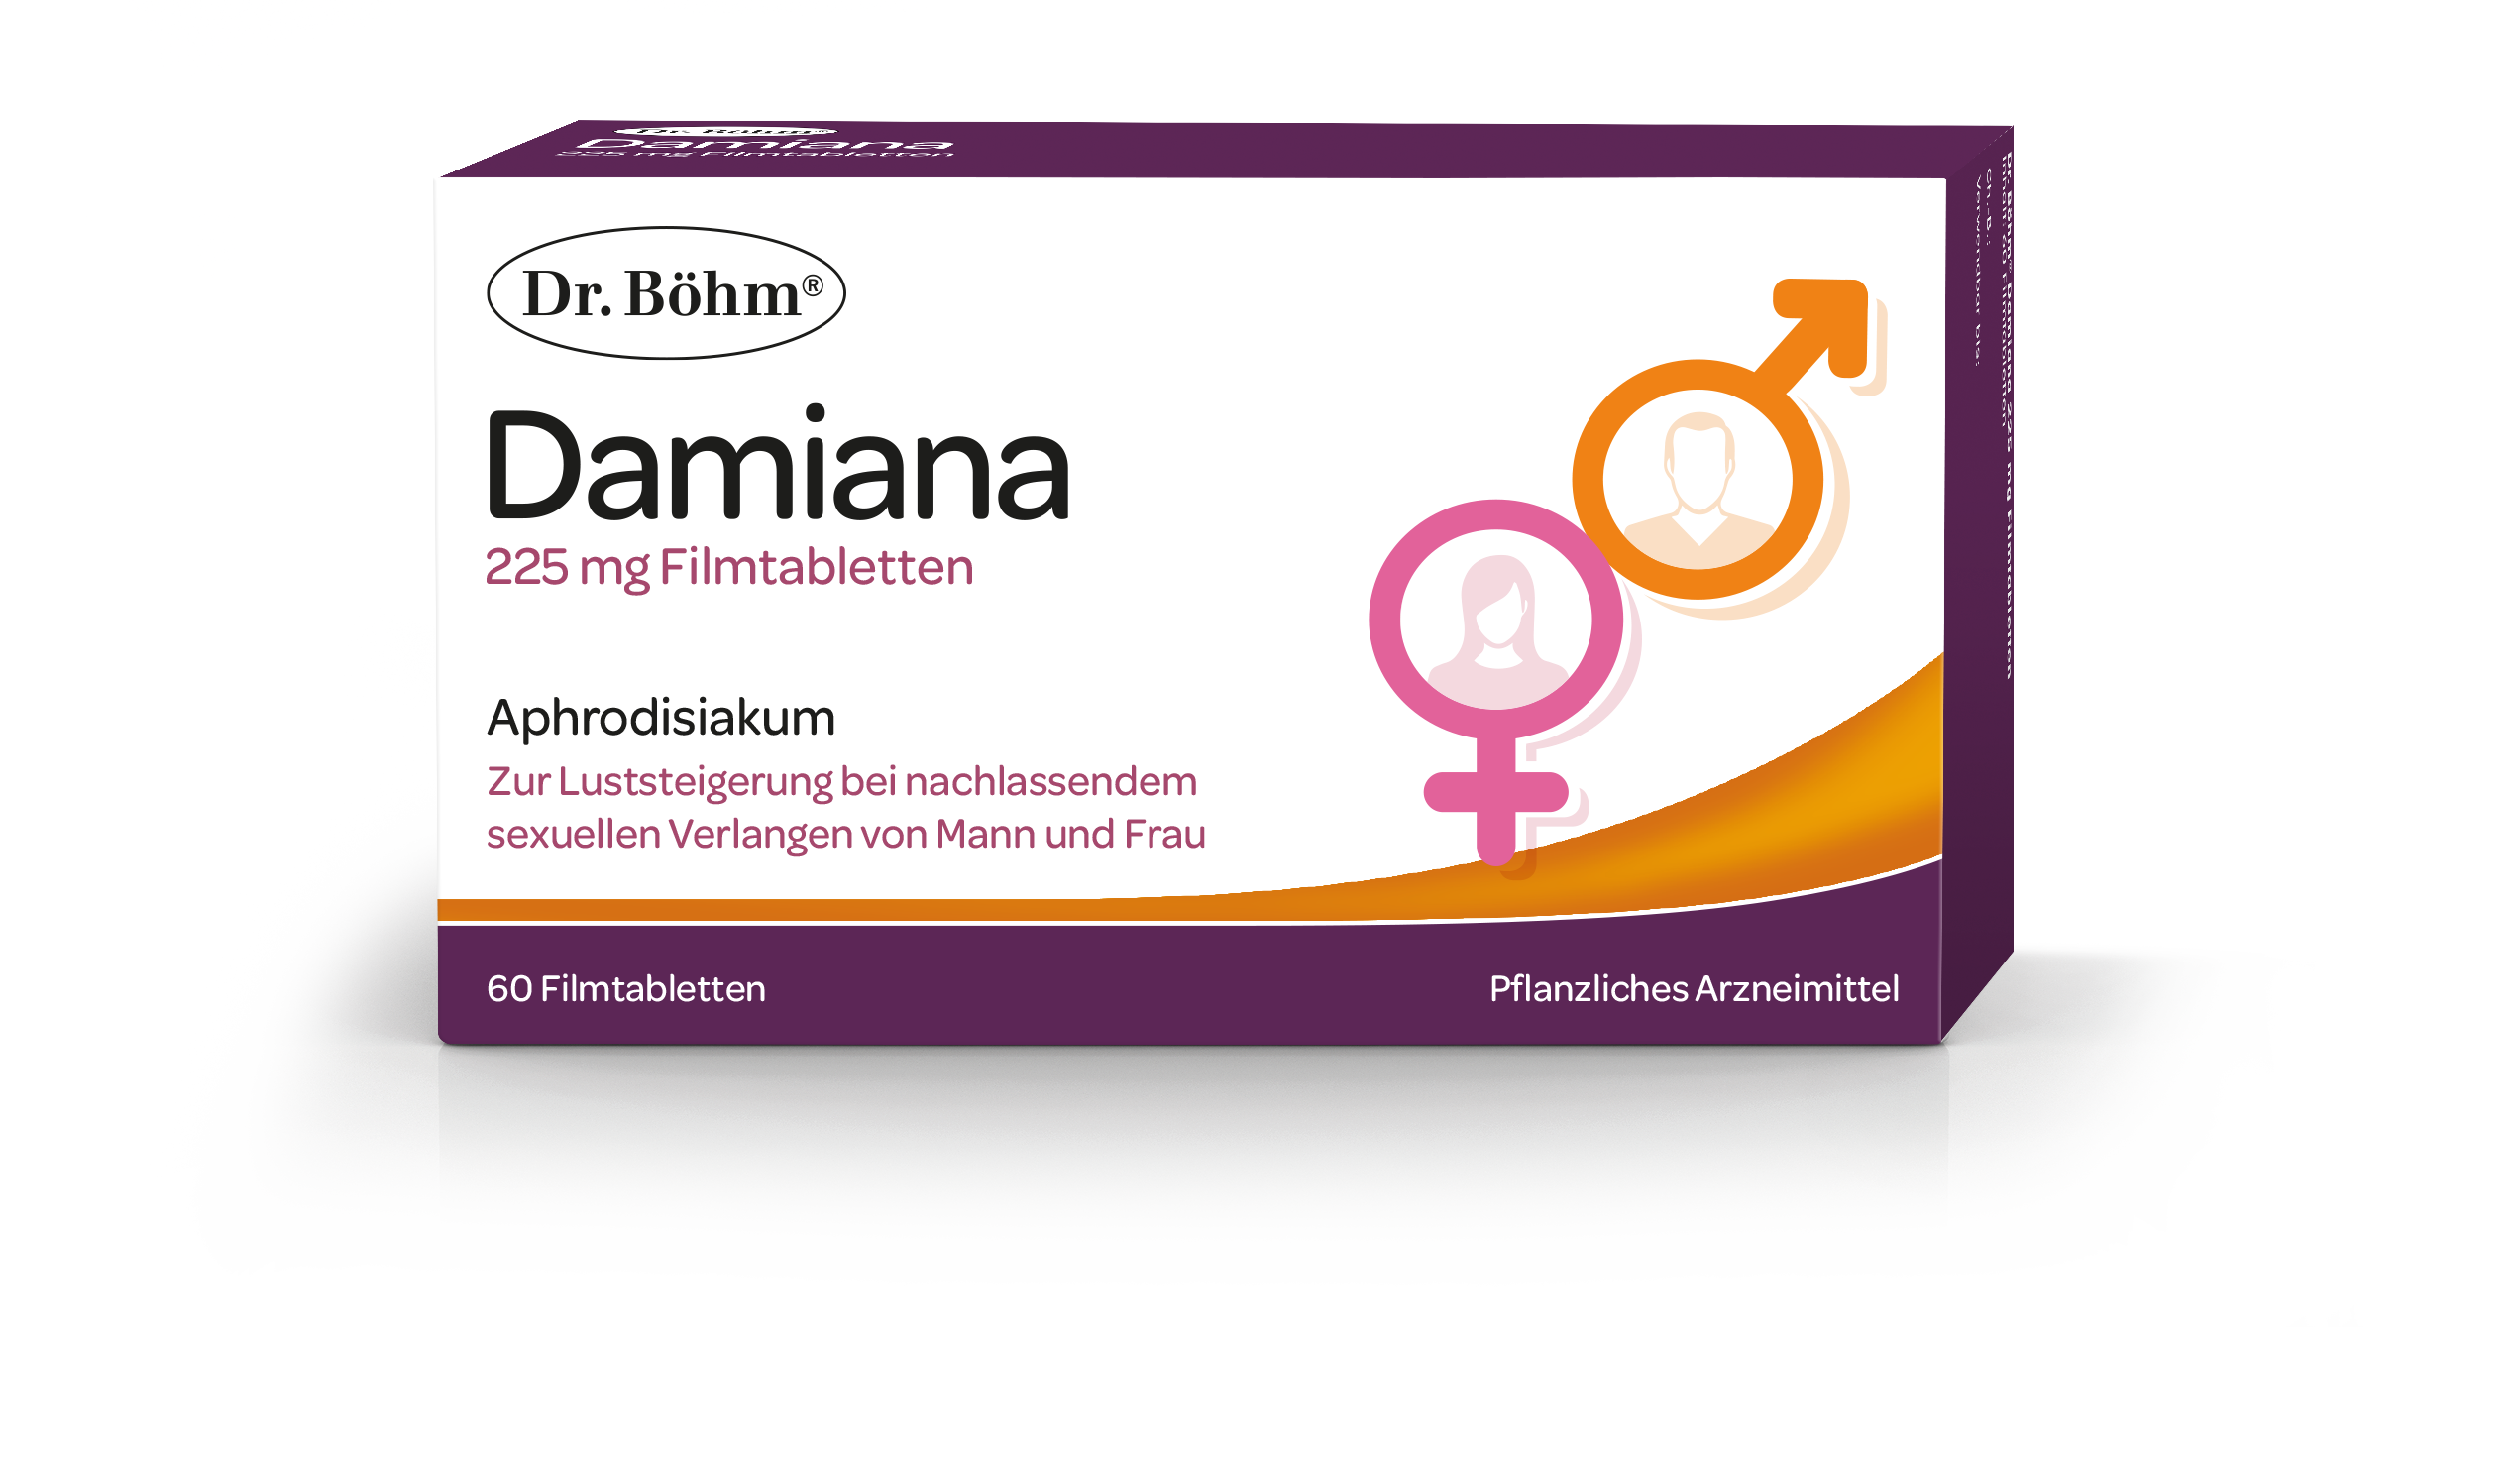 Dr. Böhm® Damiana - natürliches Aphrodisiakum aus der Damiana-Pflanze